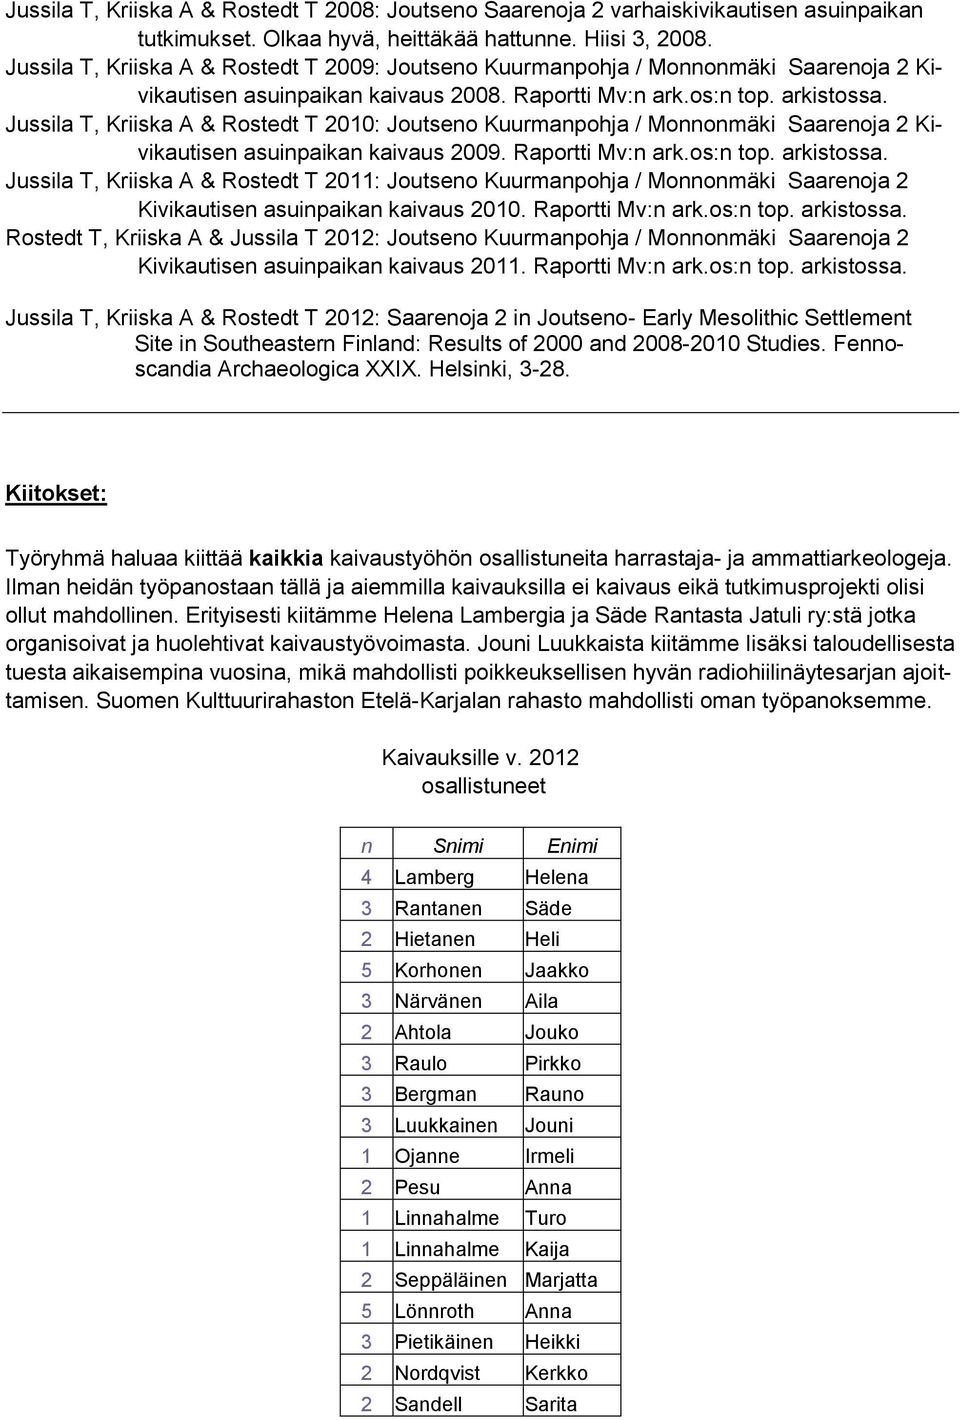 Jussila T, Kriiska A & Rostedt T 2010: Joutseno Kuurmanpohja / Monnonmäki Saarenoja 2 Kivikautisen asuinpaikan kaivaus 2009. Raportti Mv:n ark.os:n top. arkistossa.